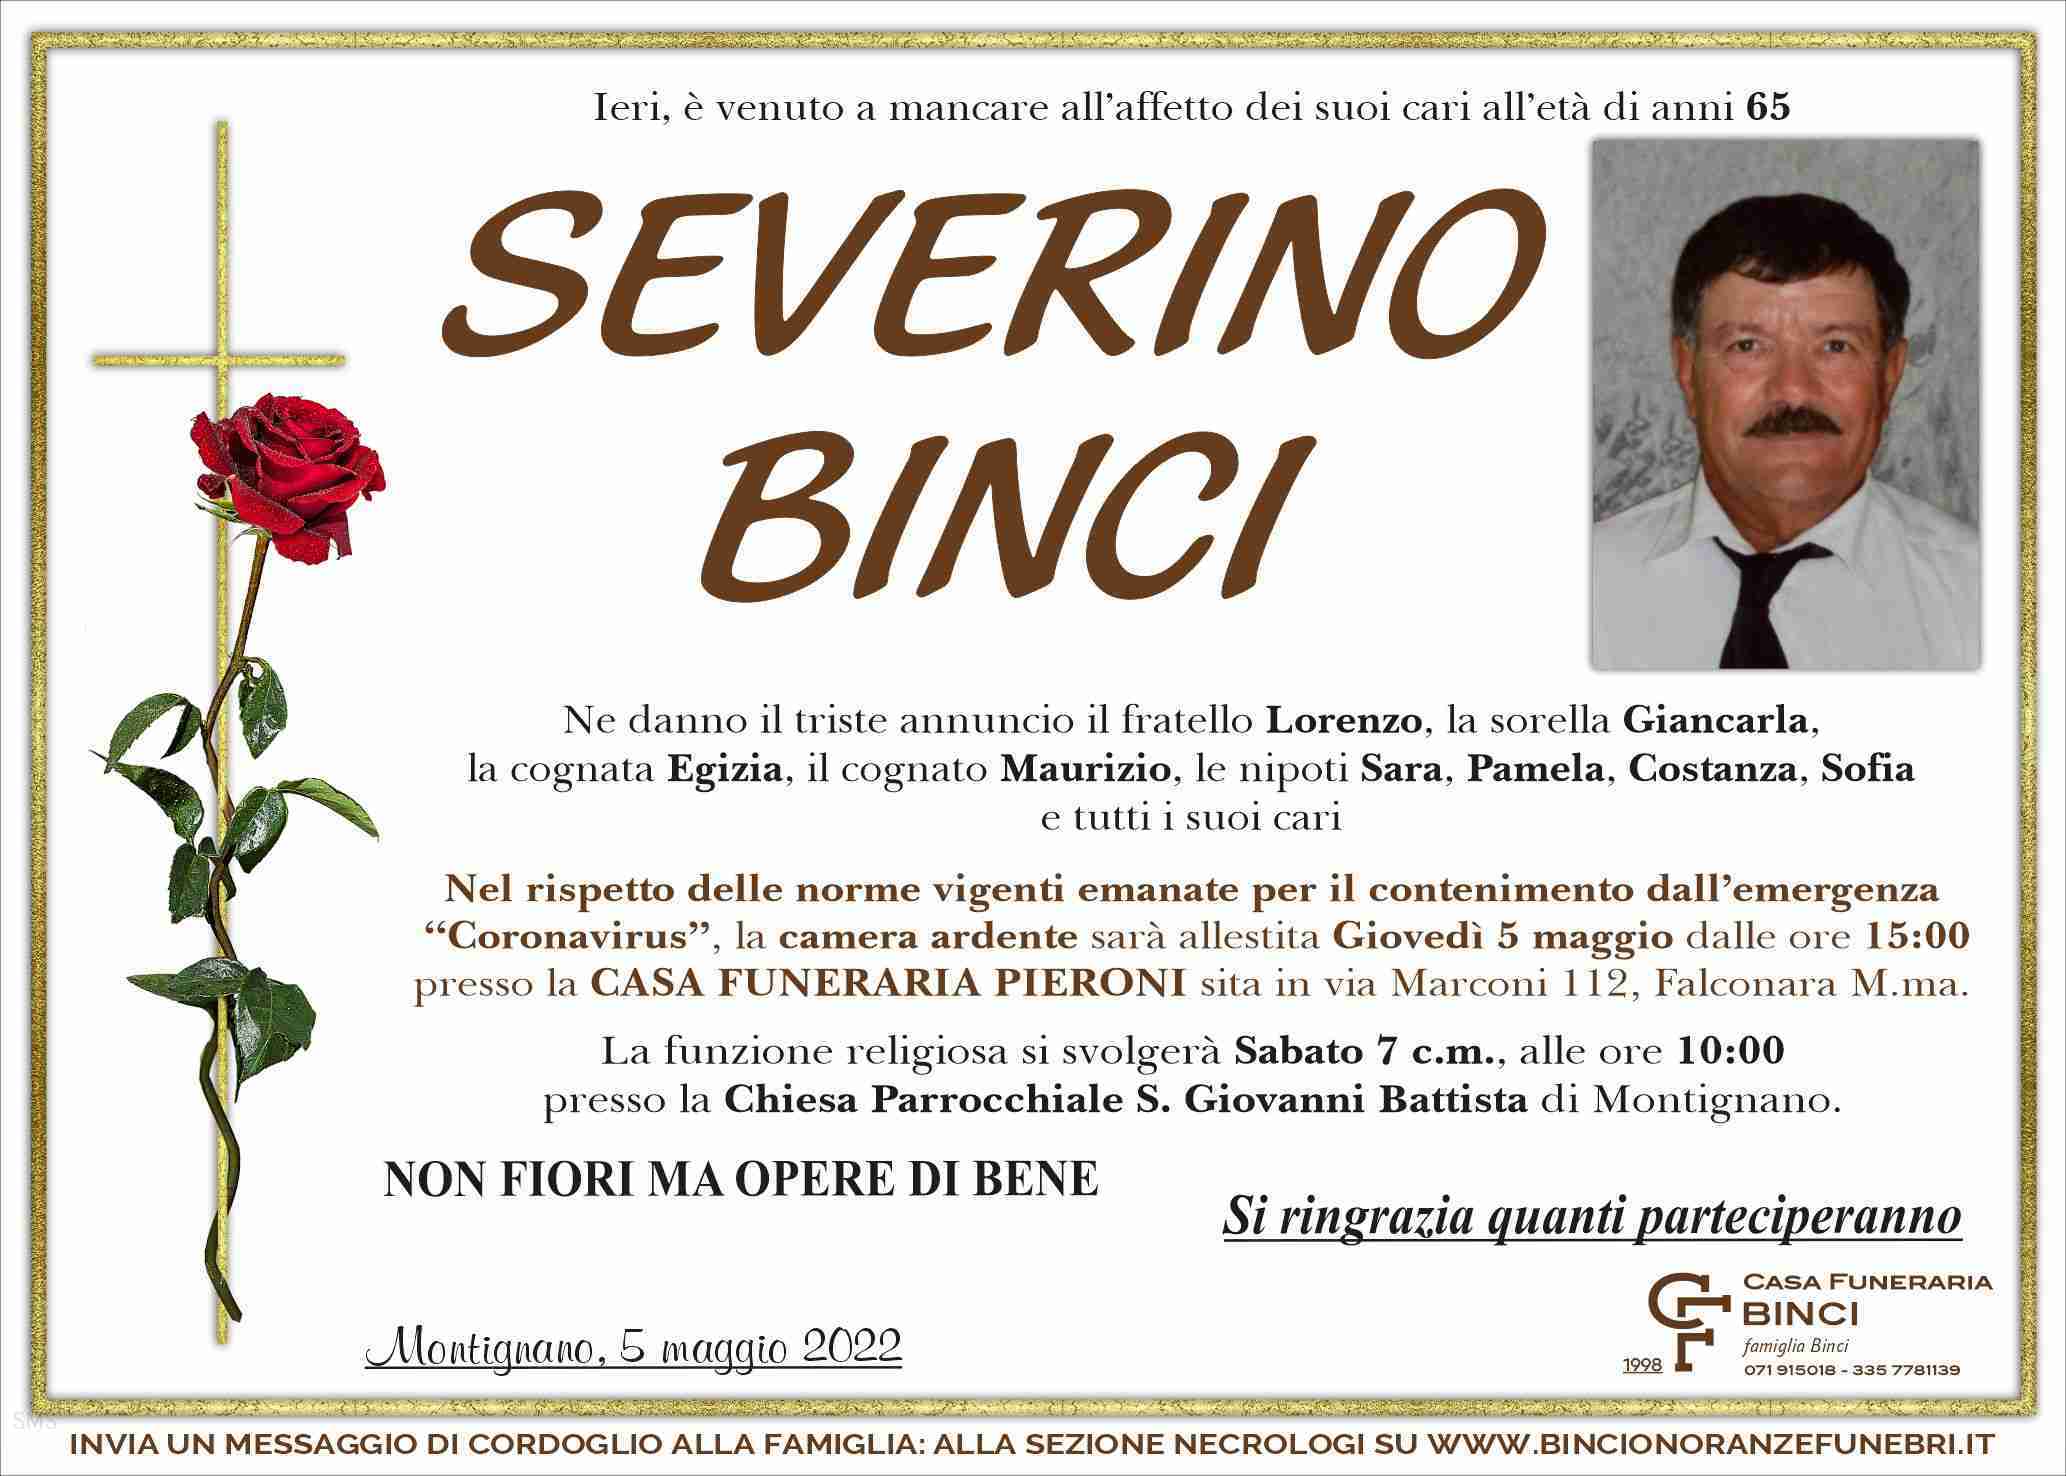 Severino Binci